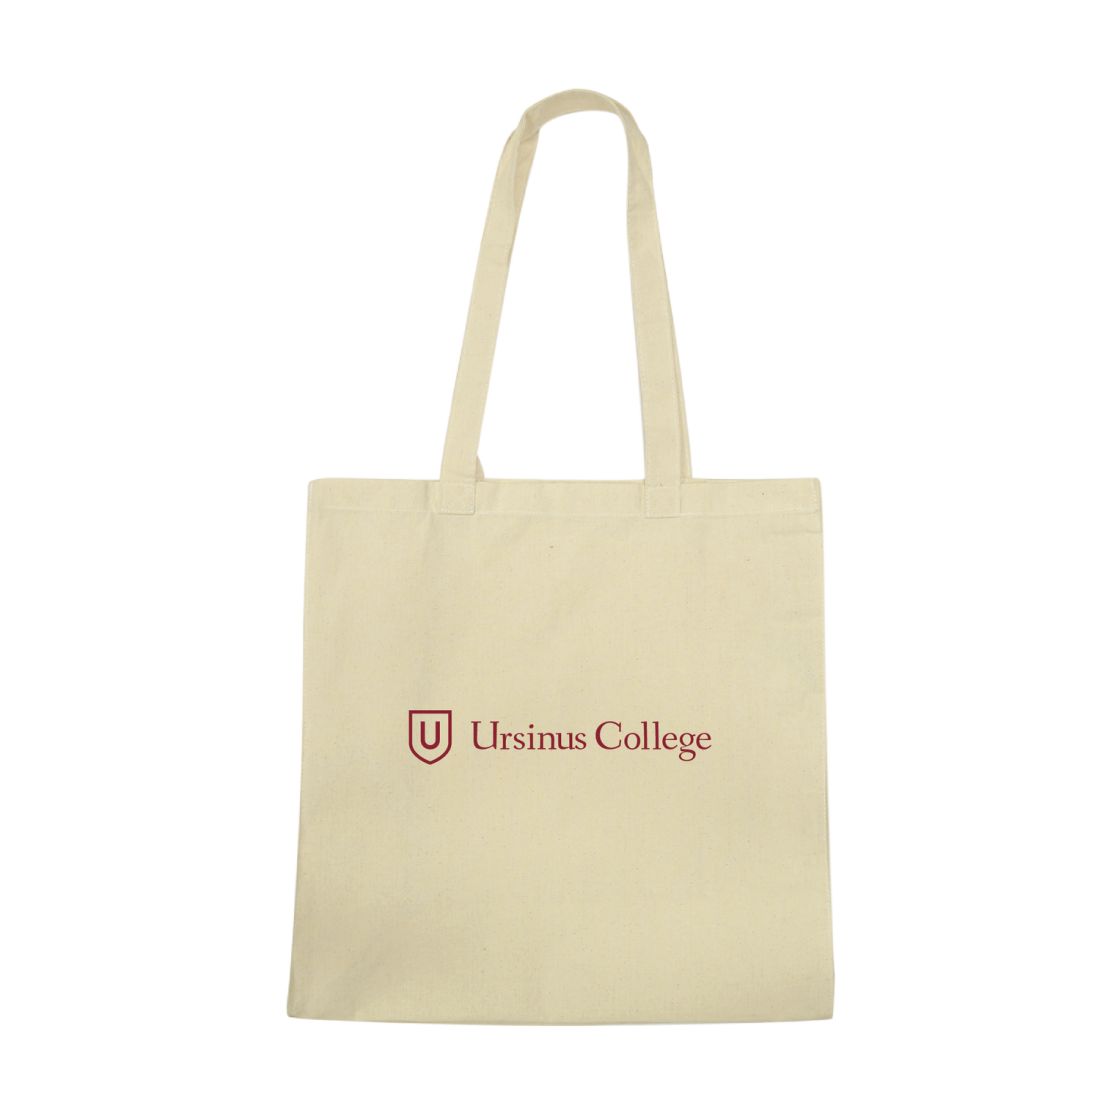 Ursinus College Bears Institutional Tote Bag